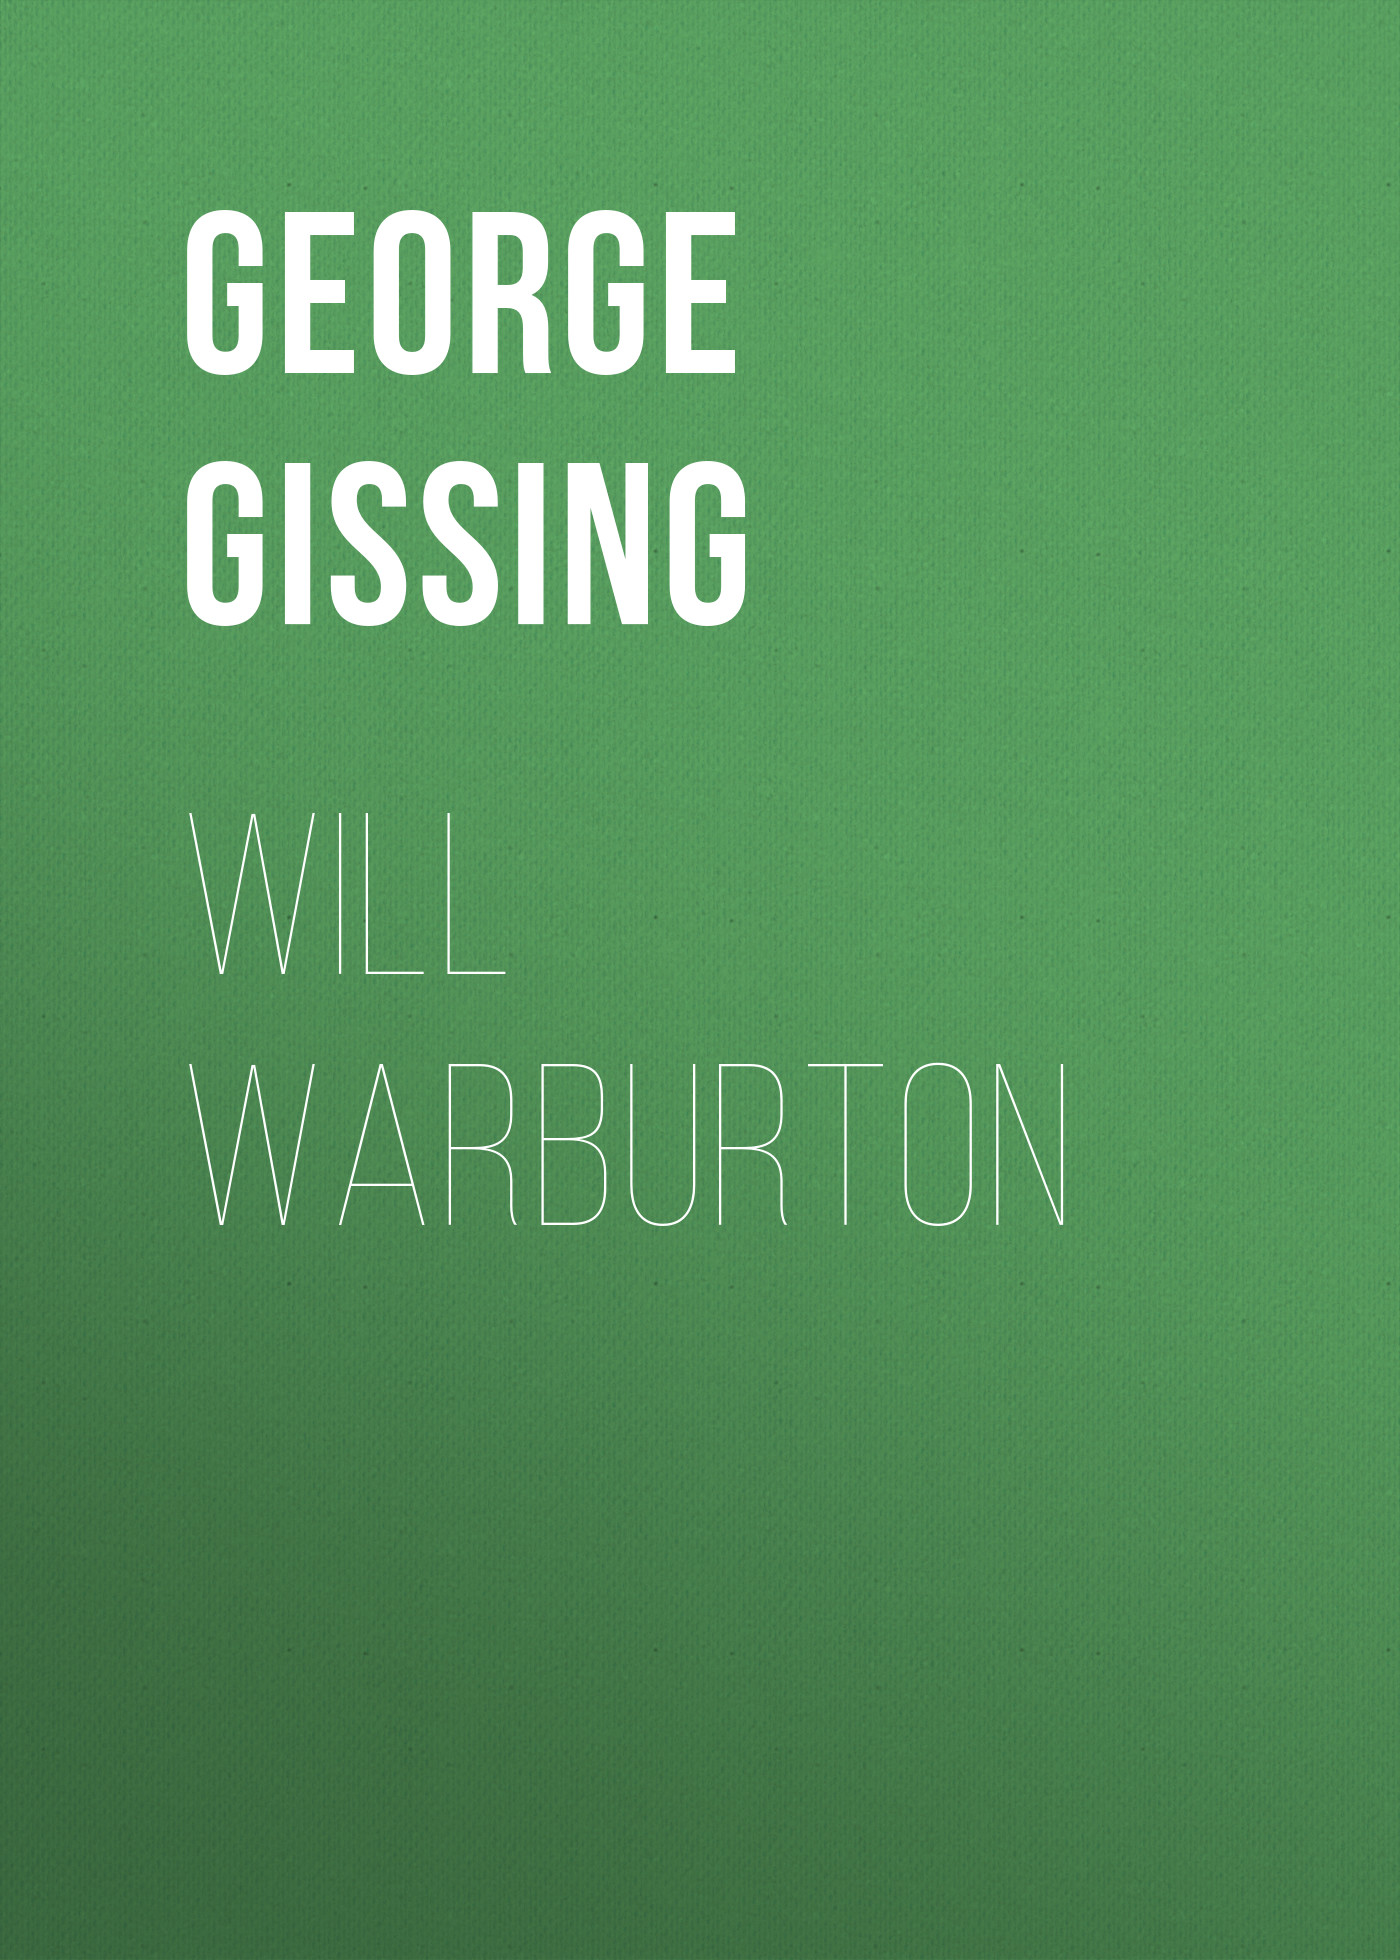 Книга Will Warburton из серии , созданная George Gissing, может относится к жанру Зарубежная классика, Литература 19 века, Зарубежная старинная литература. Стоимость электронной книги Will Warburton с идентификатором 38307001 составляет 0 руб.